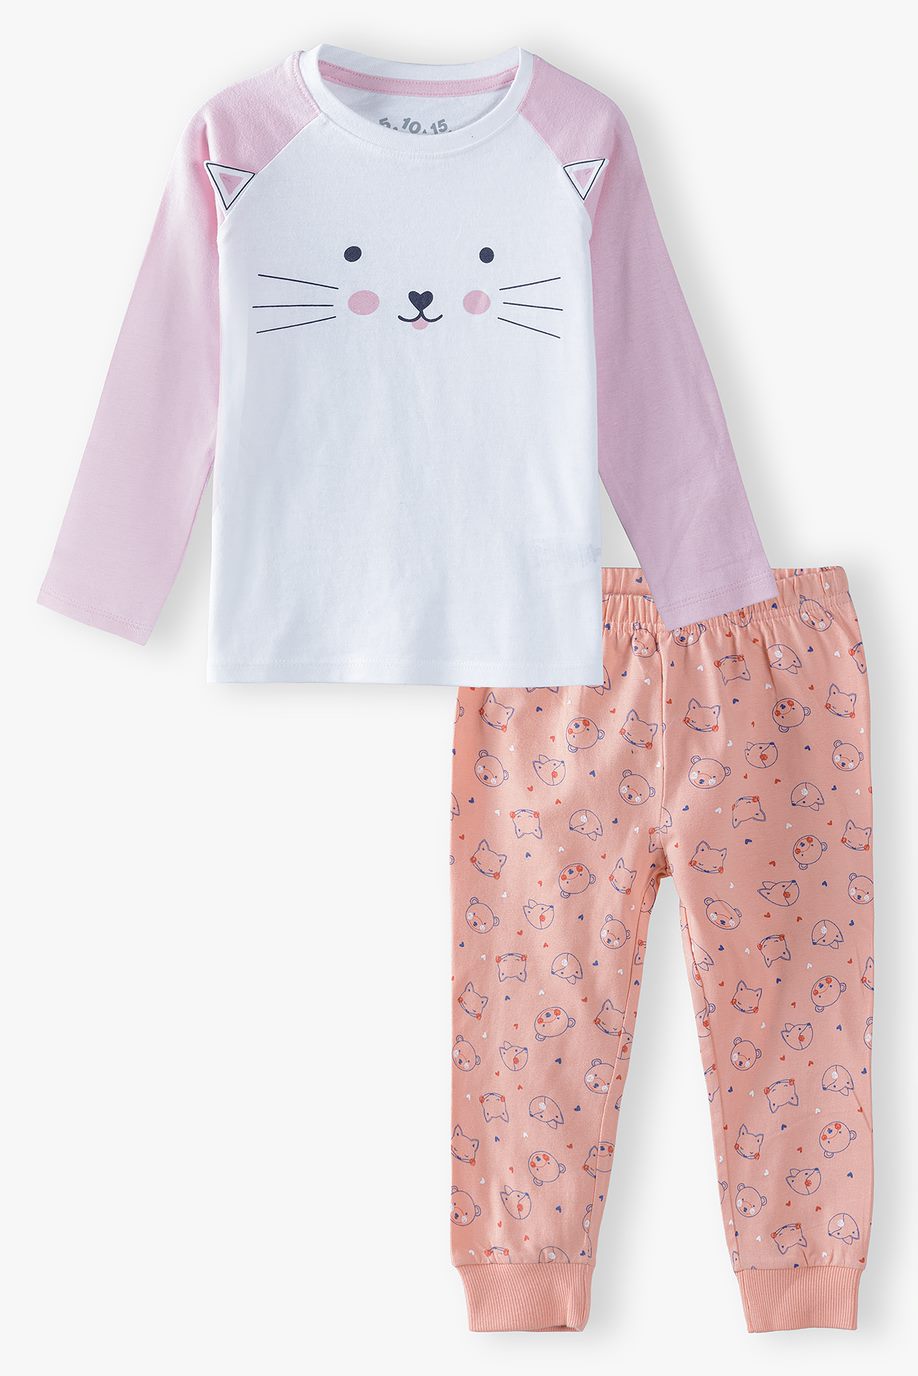 Girl's pyjamas with cat face